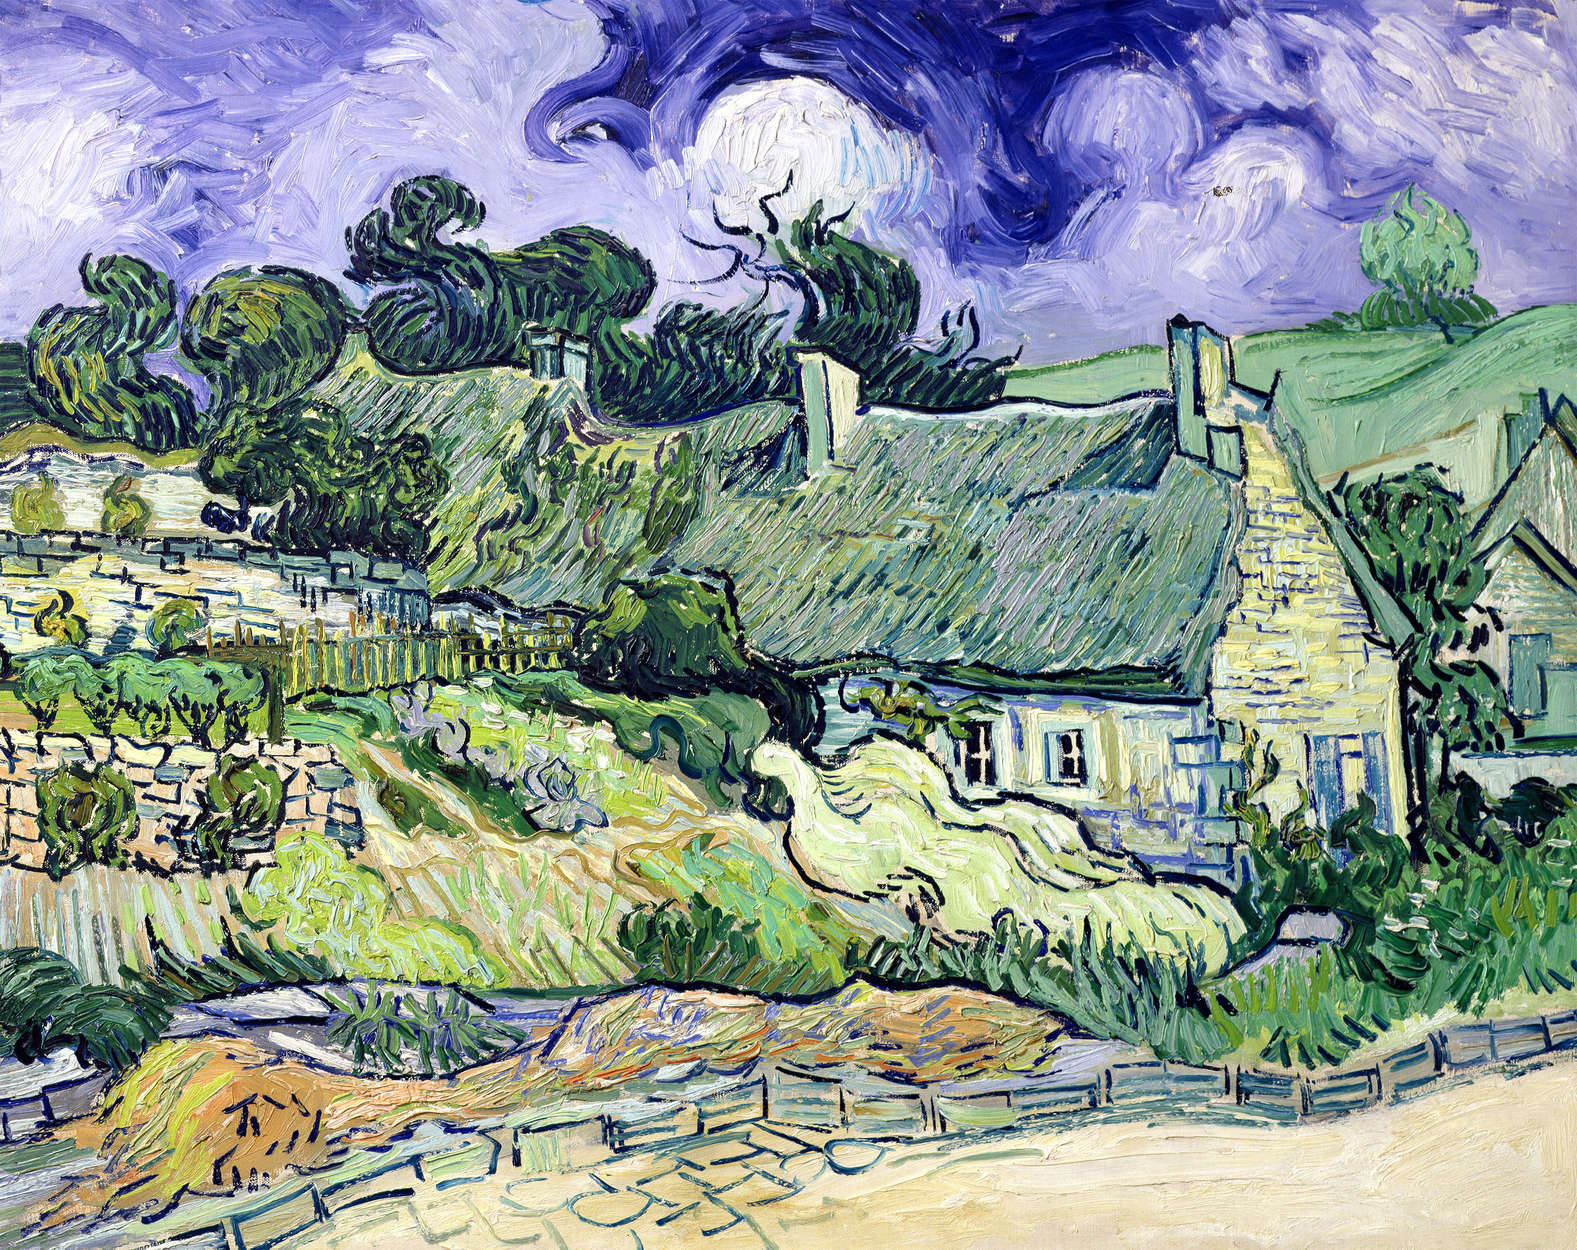             Fototapete "Strohdachhäuser in Cordeville" von Vincent van Gogh
        